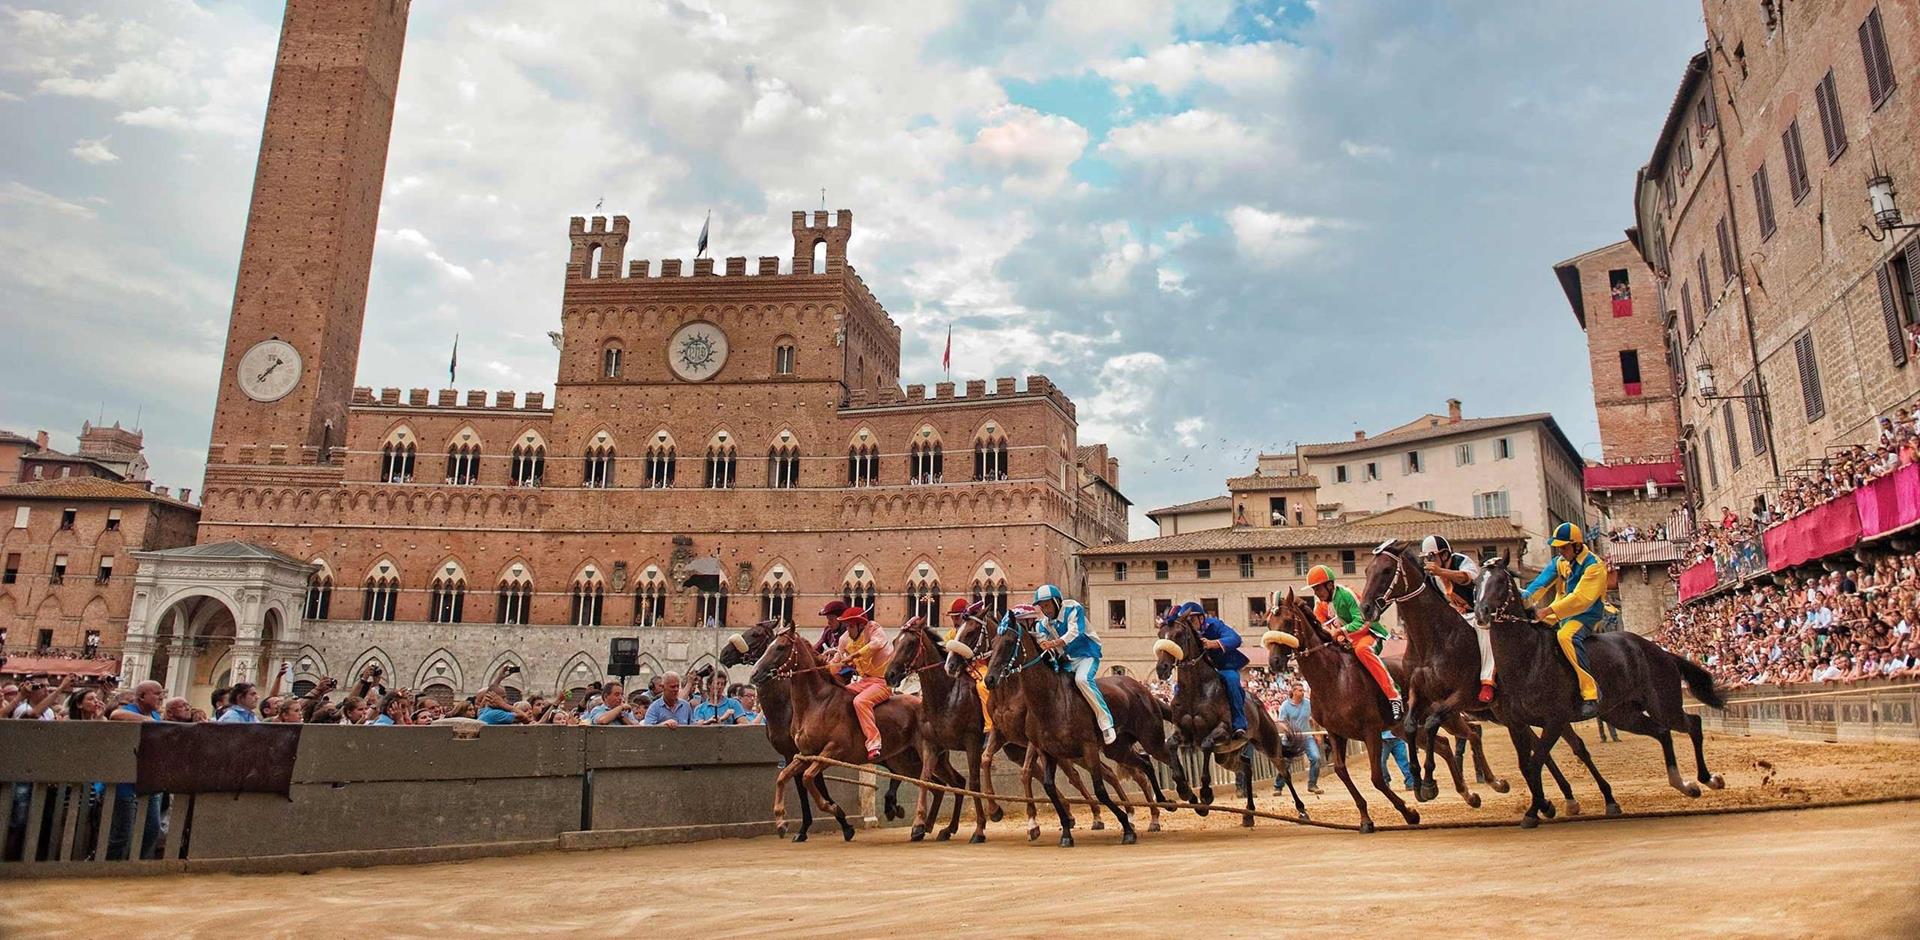 Palio horse race, Italy